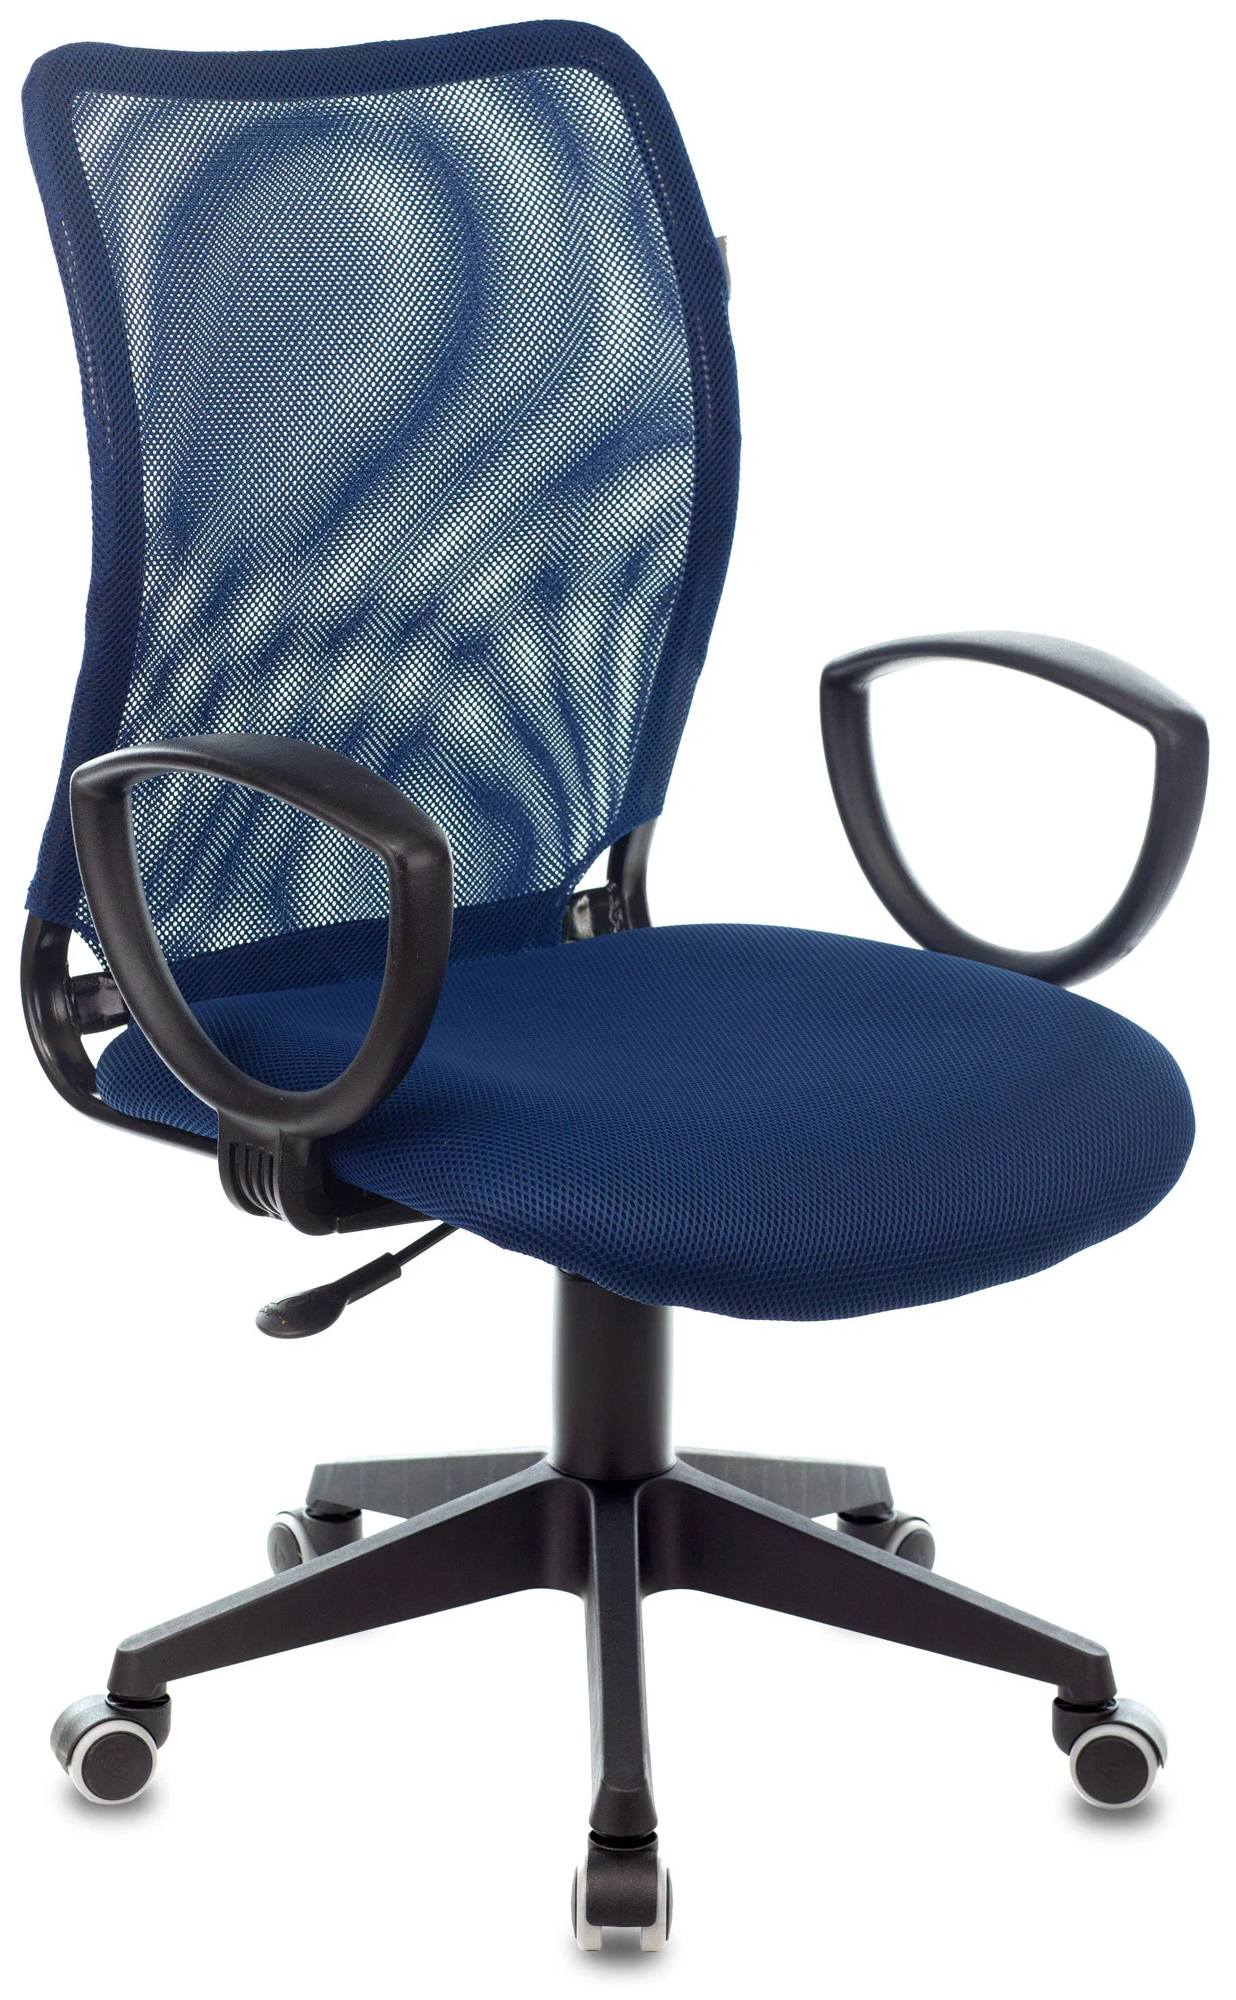 Кресло компьютерное Ch-599AXSN синий, сетка, ткань / Офисное кресло для оператора, персонала, сотрудника, для дома